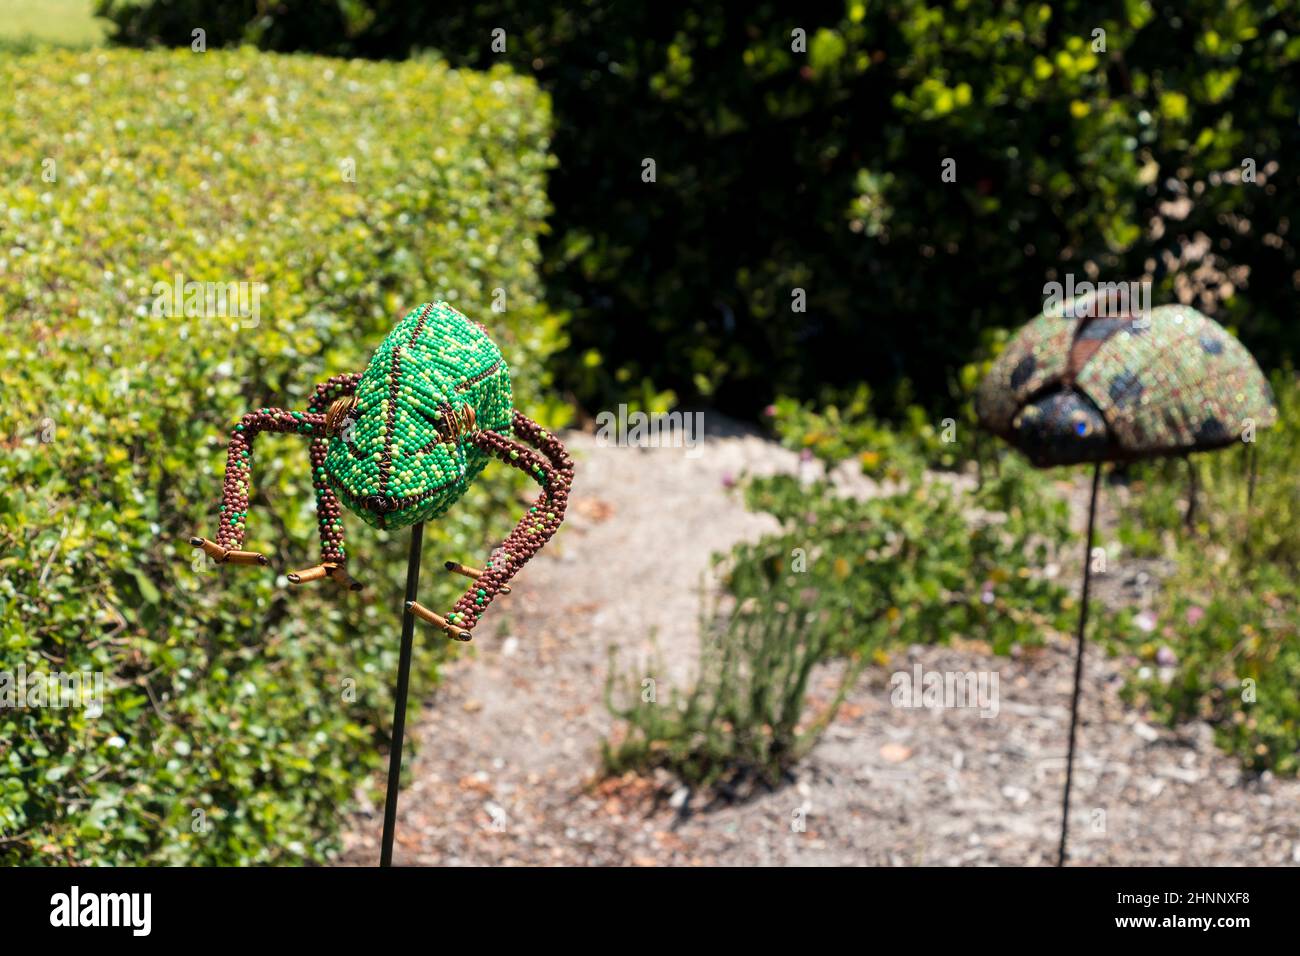 Dekorative Tiere im Garten, Blumenbeet. Eidechse, Gecko, Reptilien, Amphibien. Stockfoto